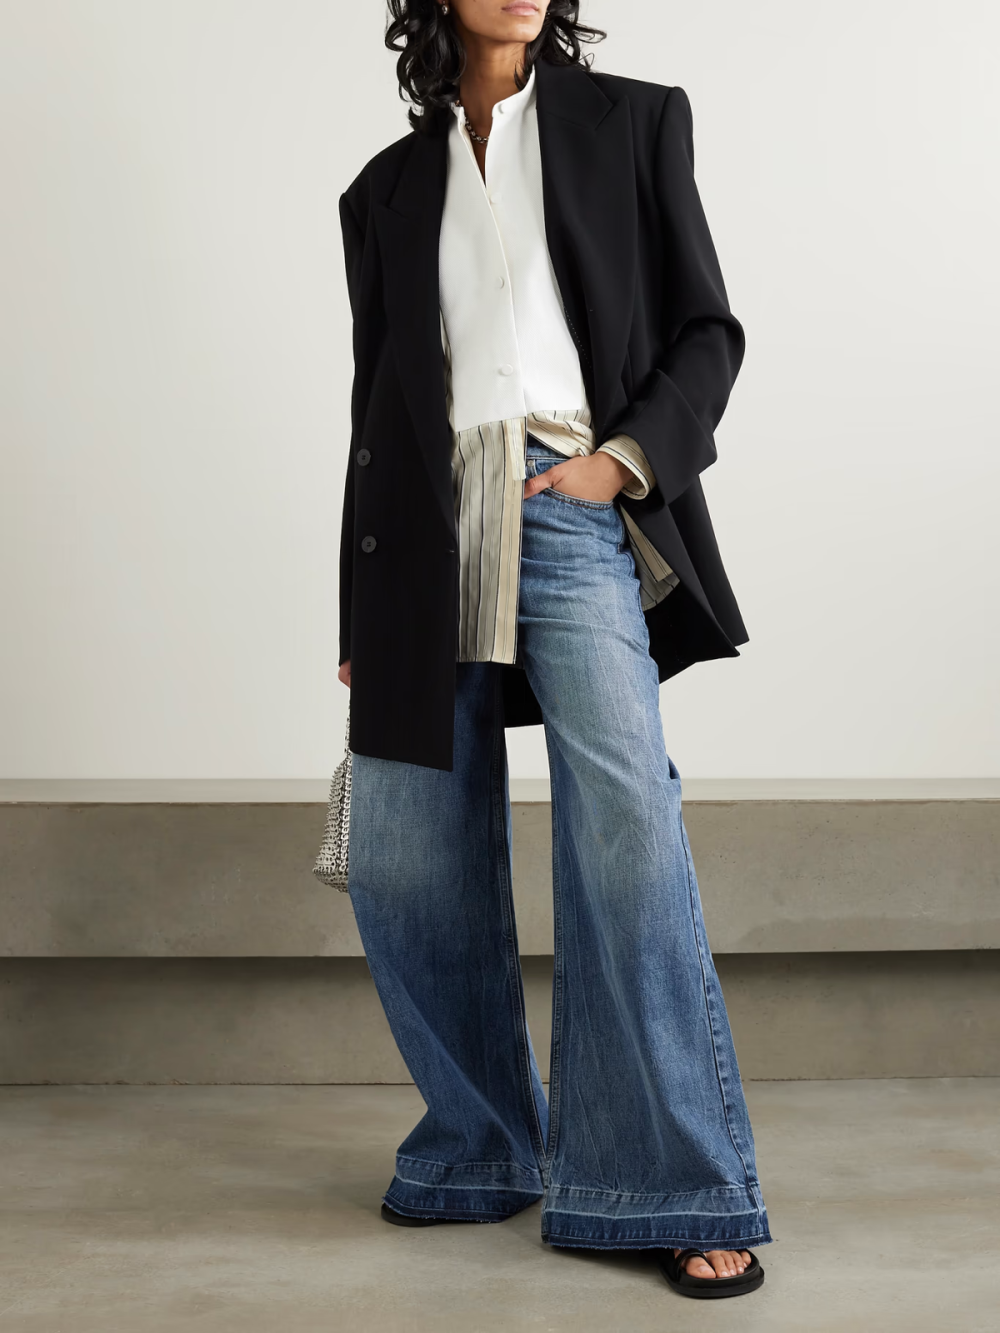 Stella McCartney 这款 “Plastron” 衬衫诞生于意大利，以条纹有机真丝混纺面料裁就。它剪裁宽松，采用传统的祖父领设计。有机纯棉制成的围嘴式衣领取灵感自燕尾服，丰富了衣身的色彩对比。衣袖两侧带有夸张的开衩，手臂可从中伸出，为造型增添新意。
